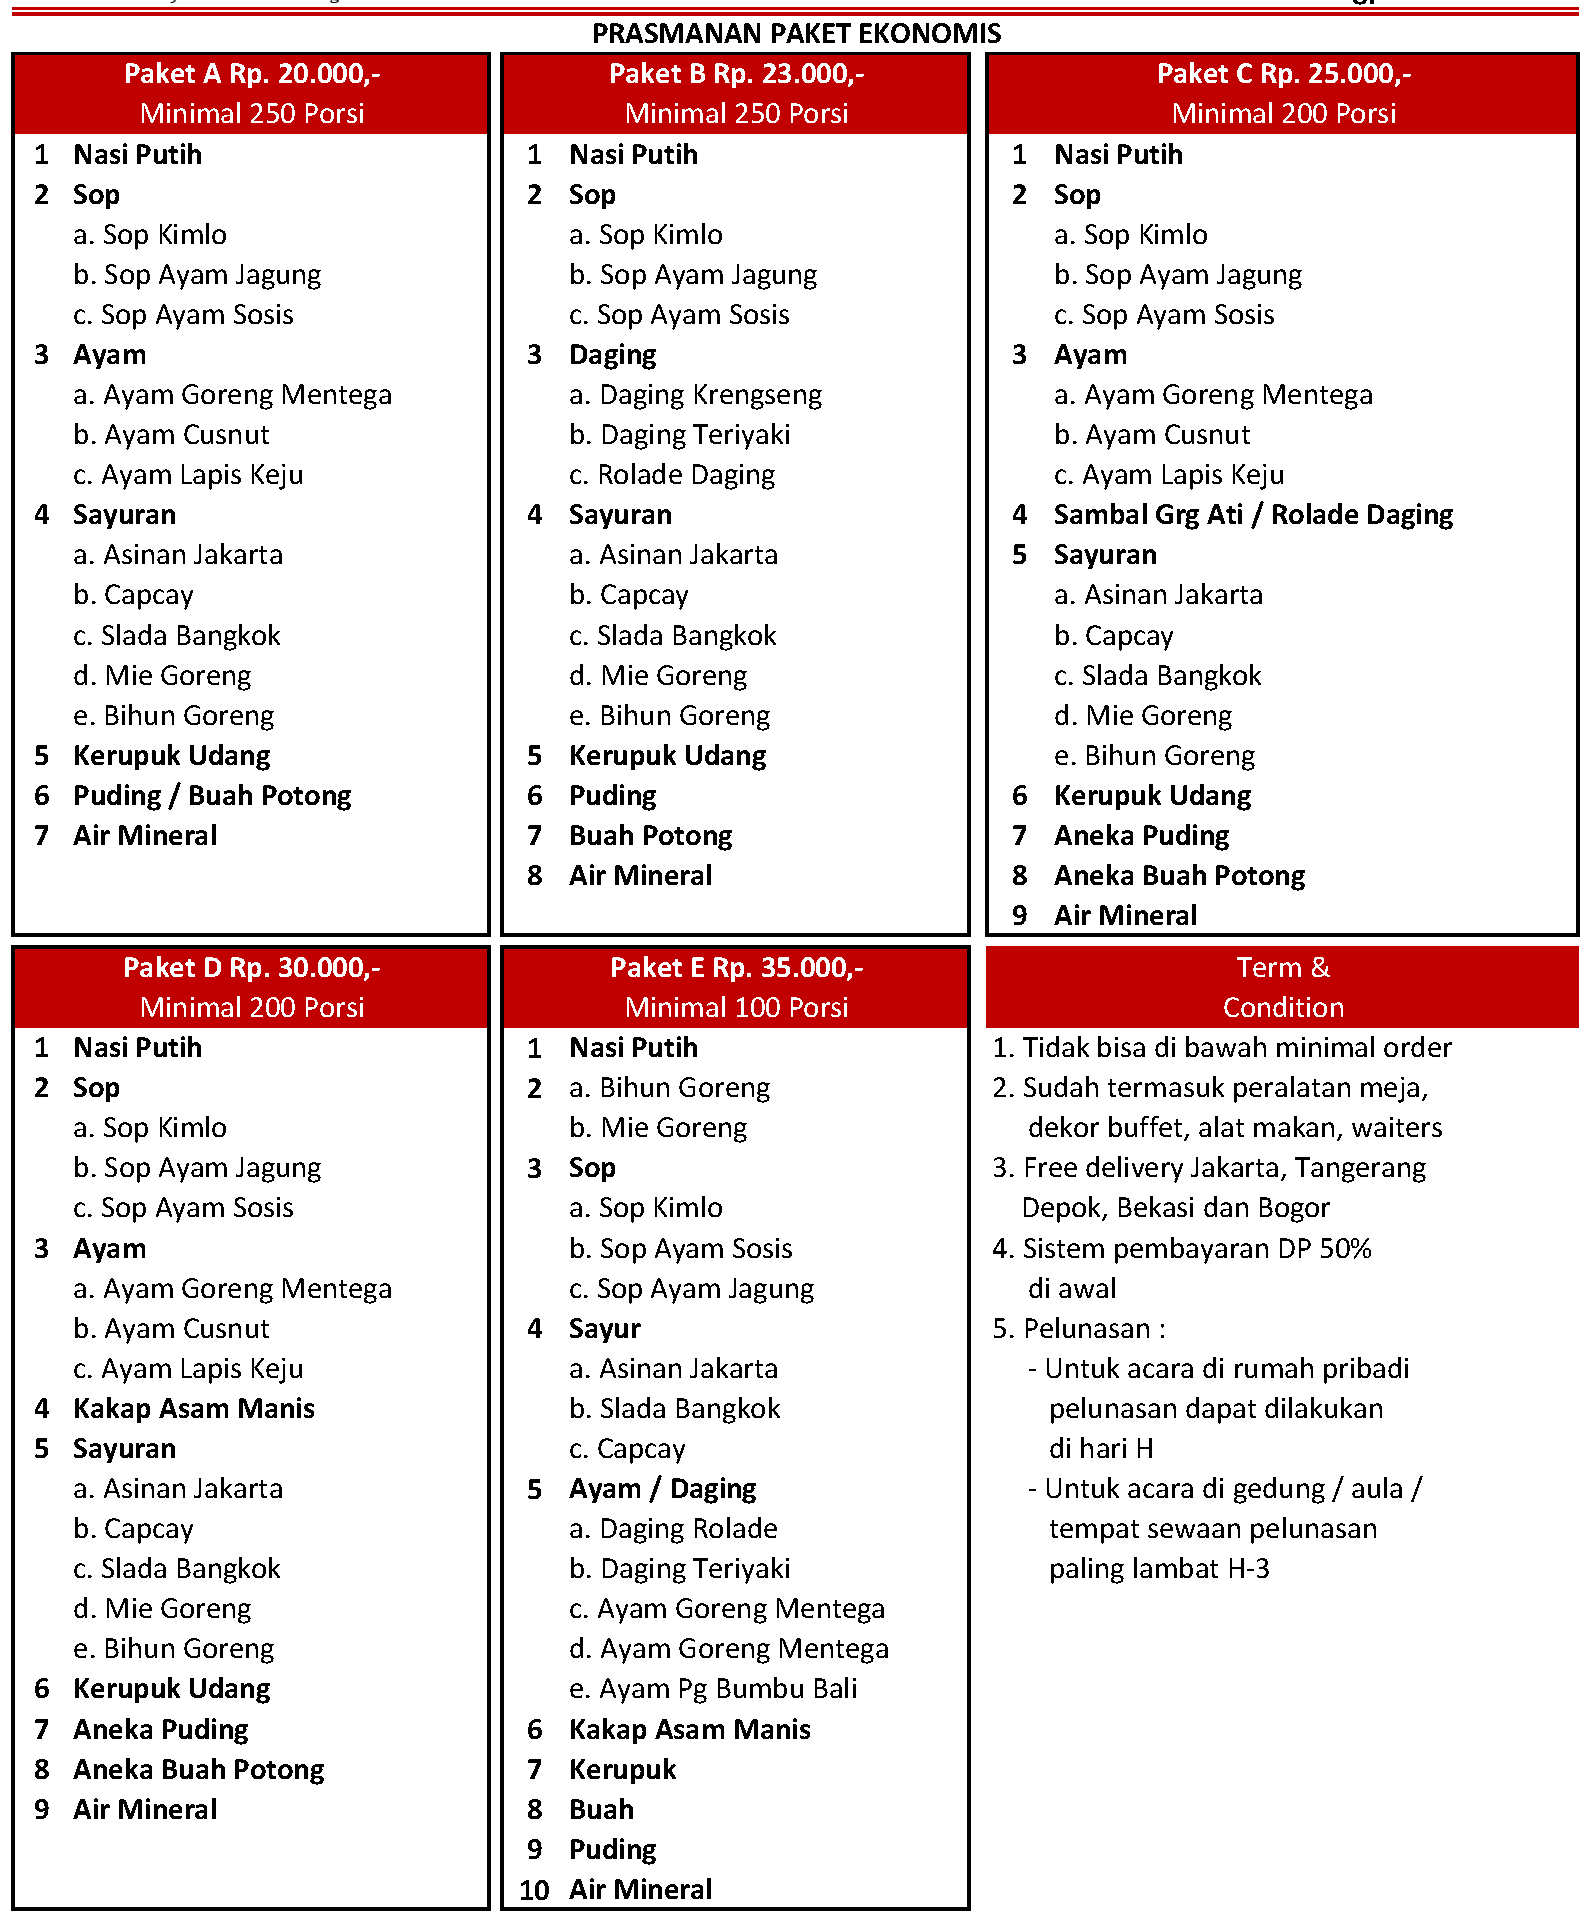 daftar menu catering prasmanan murah di Jakarta, Tangerang, Bekasi, Depok dan Bogor 2020 - 2021